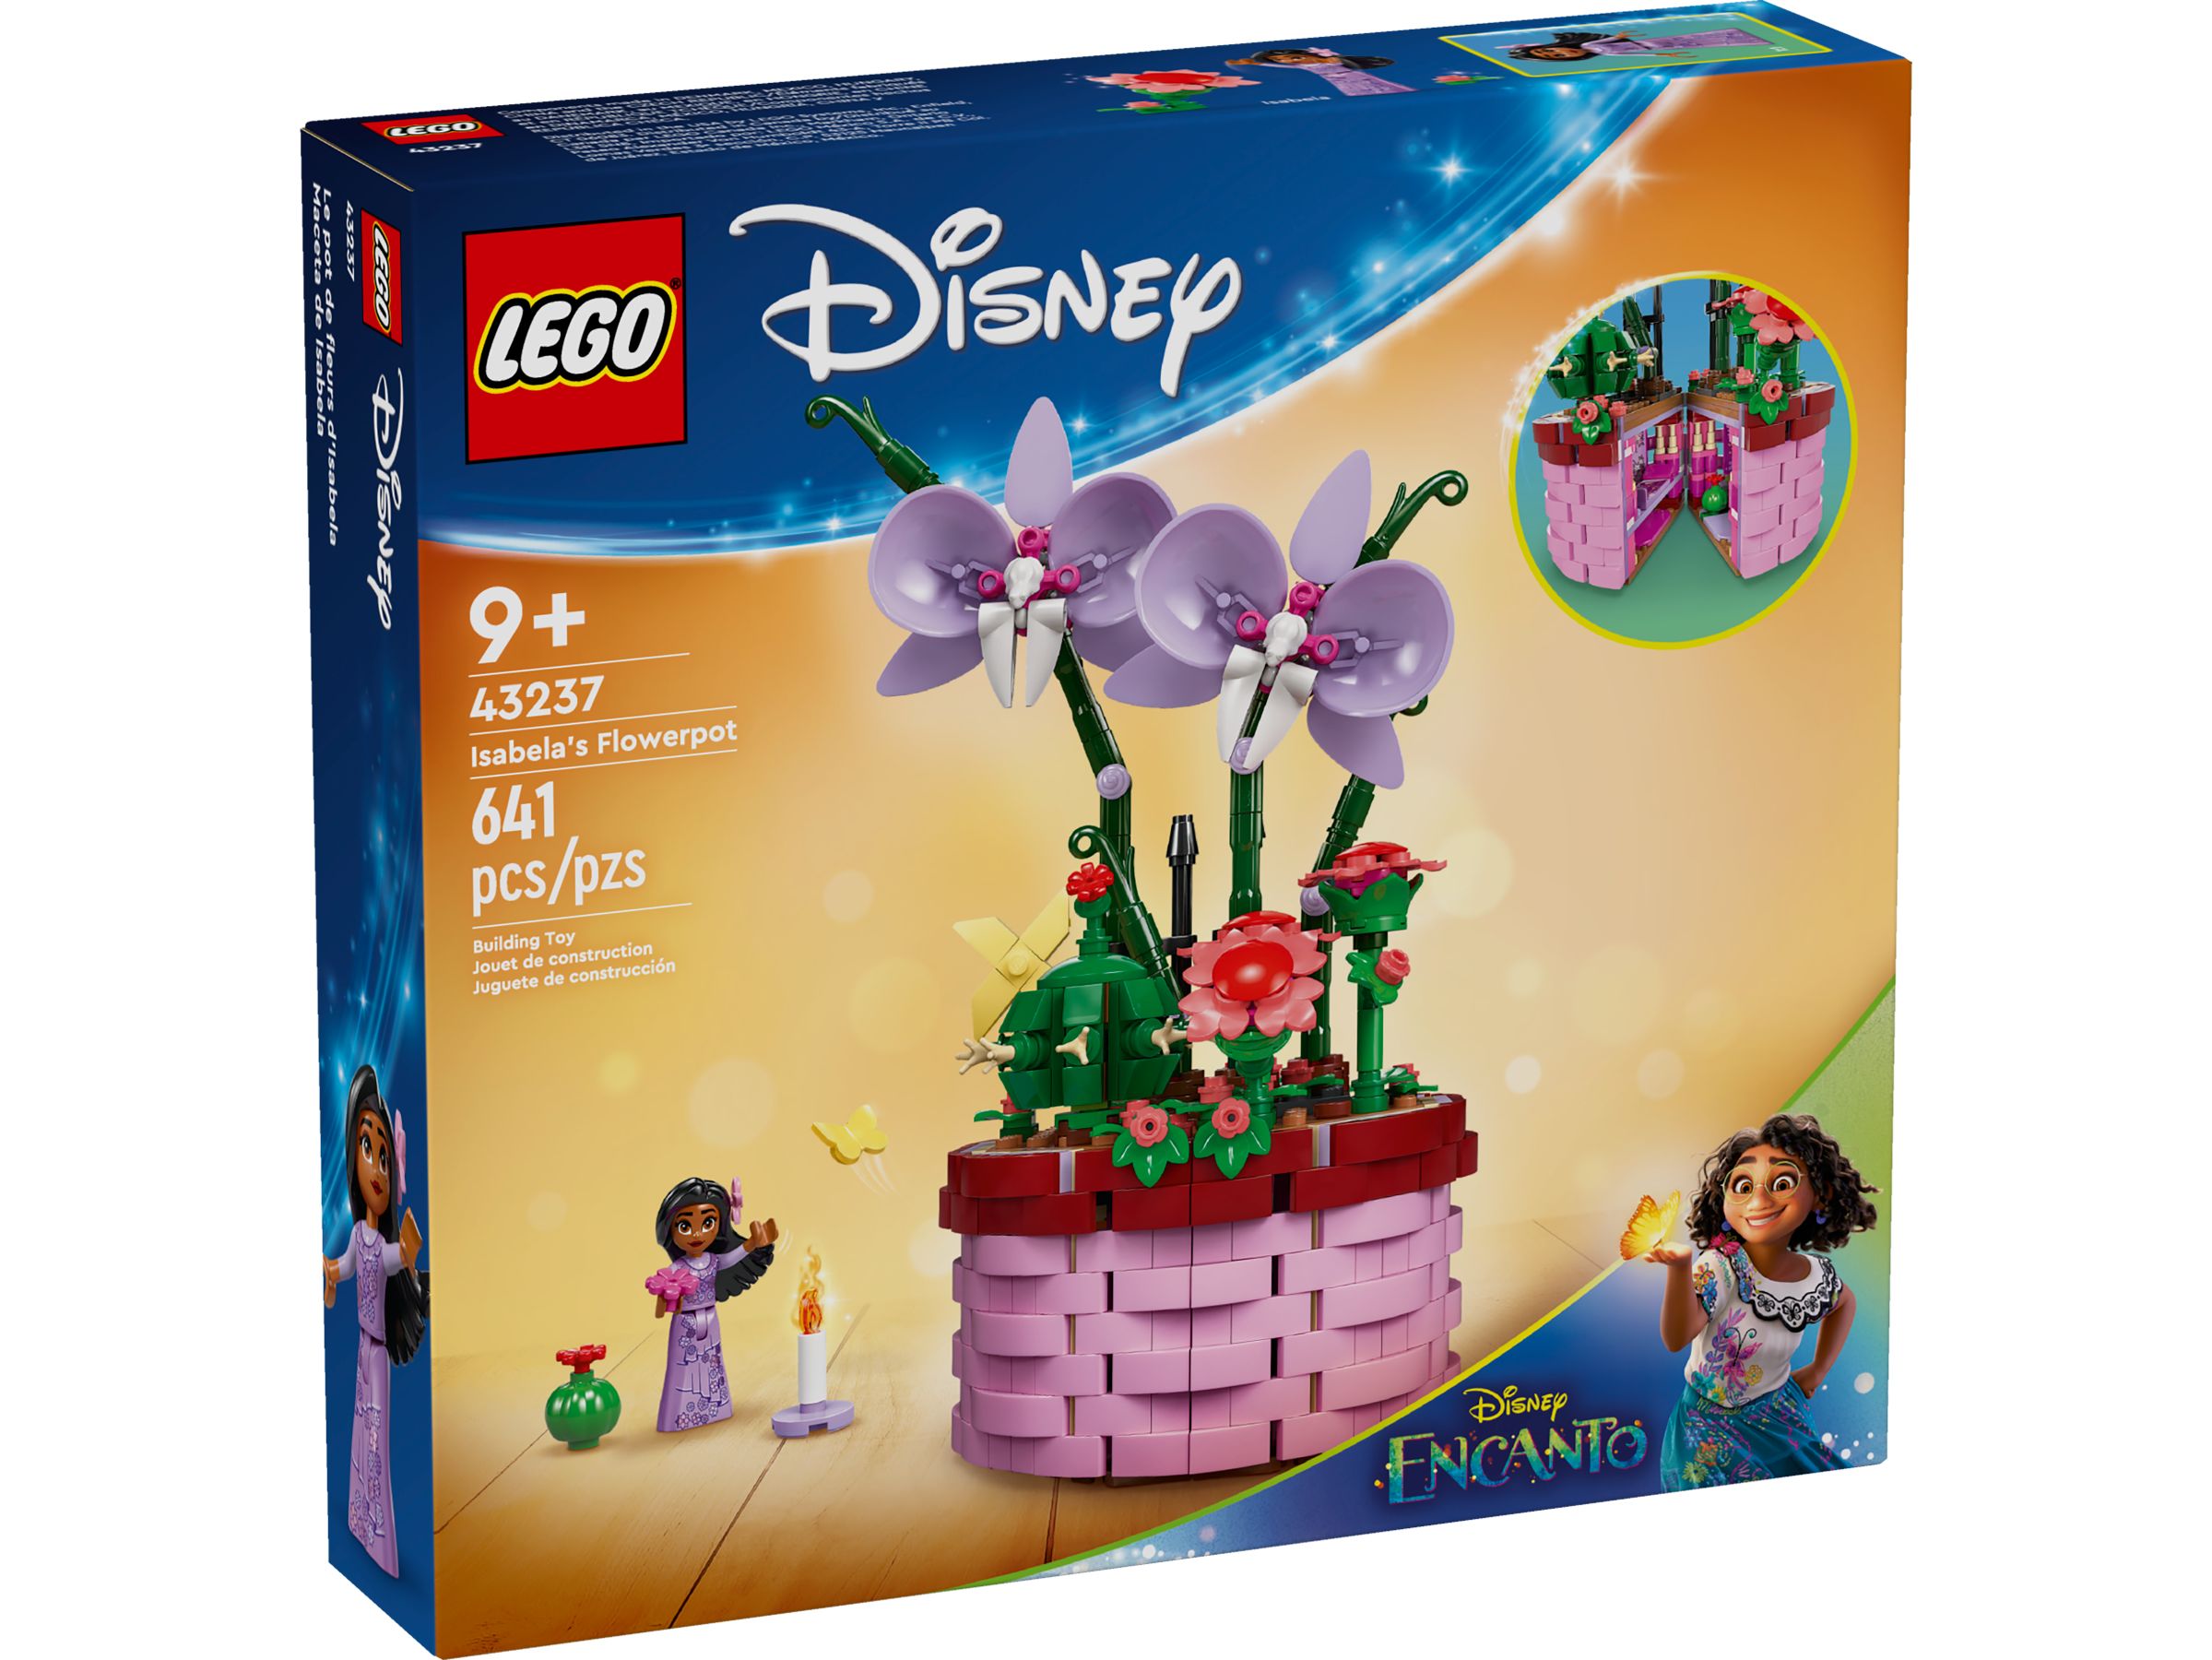 LEGO Disney 43237 Isabelas Blumentopf LEGO_43237_Box1_v39.jpg